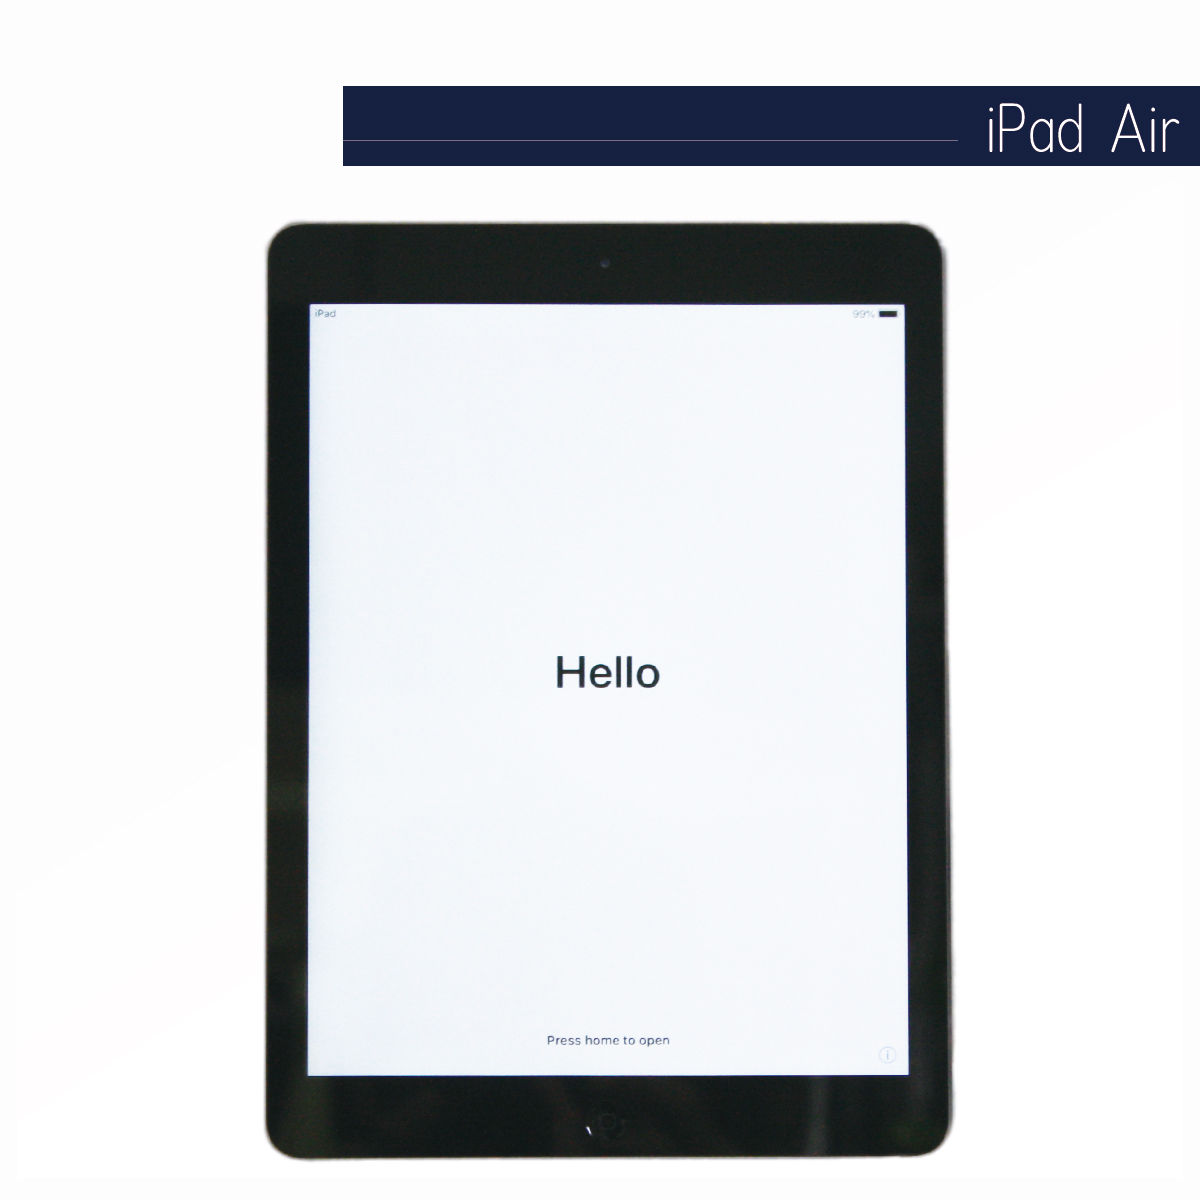 iPadAir WiFiモデル16GB A1474 - rehda.com